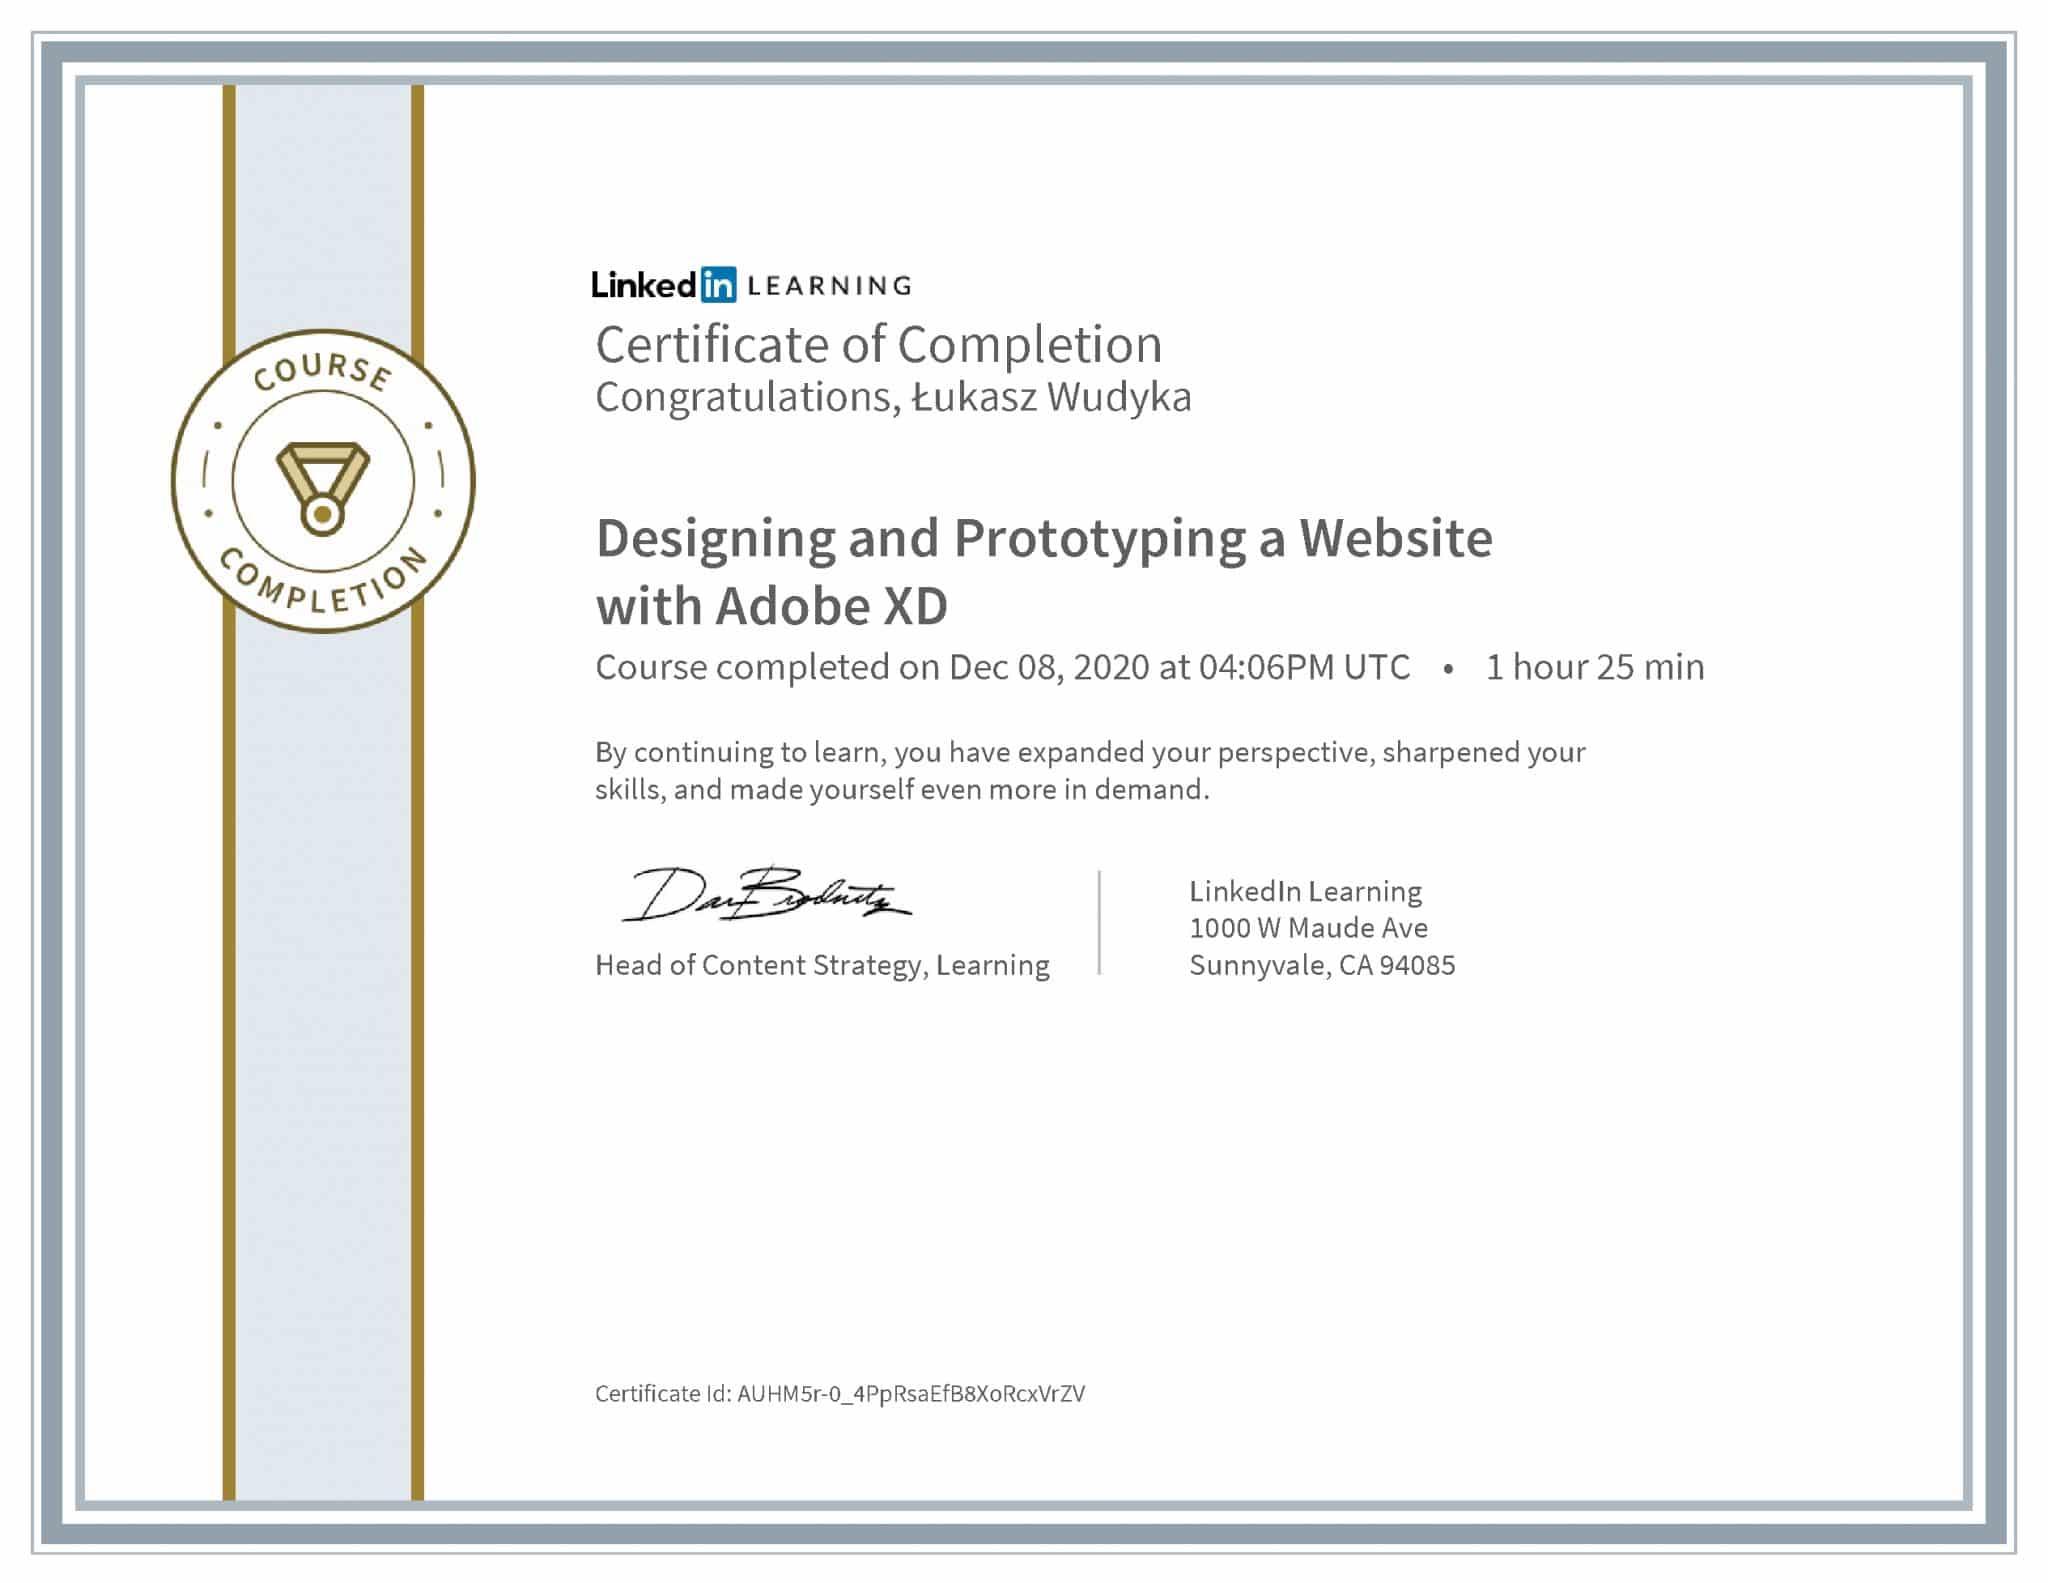 Łukasz Wudyka certyfikat LinkedIn Designing and Prototyping a Website with Adobe XD